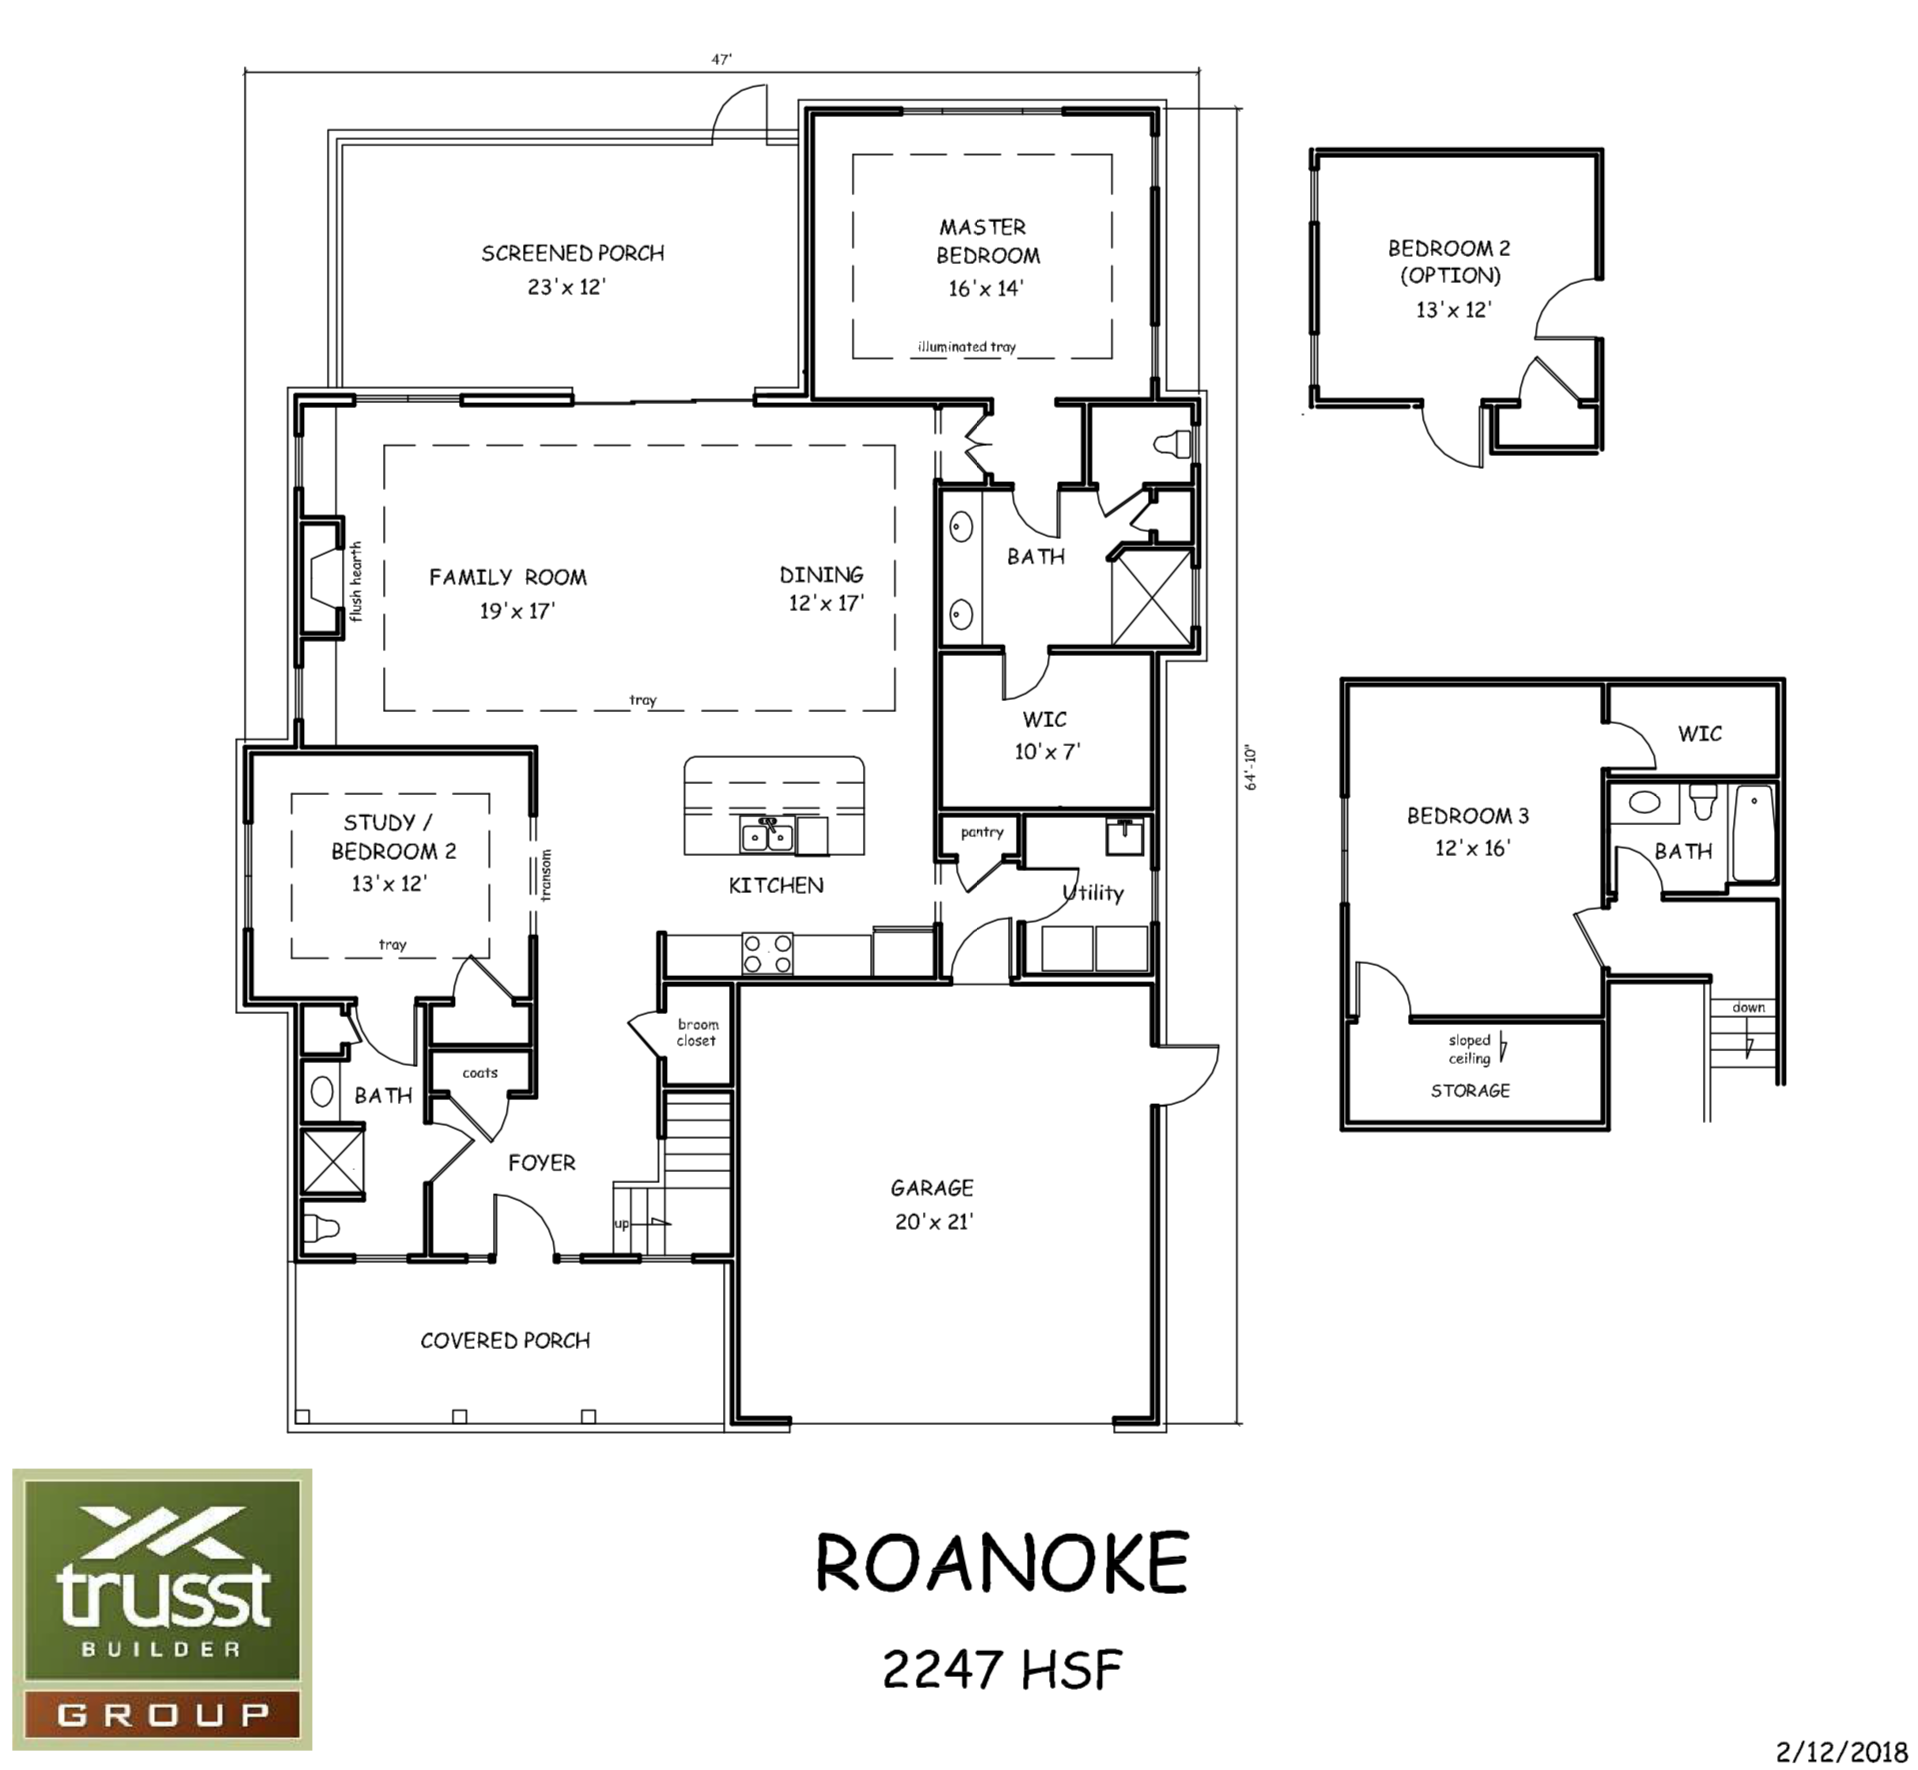 Roanoke floor plan image